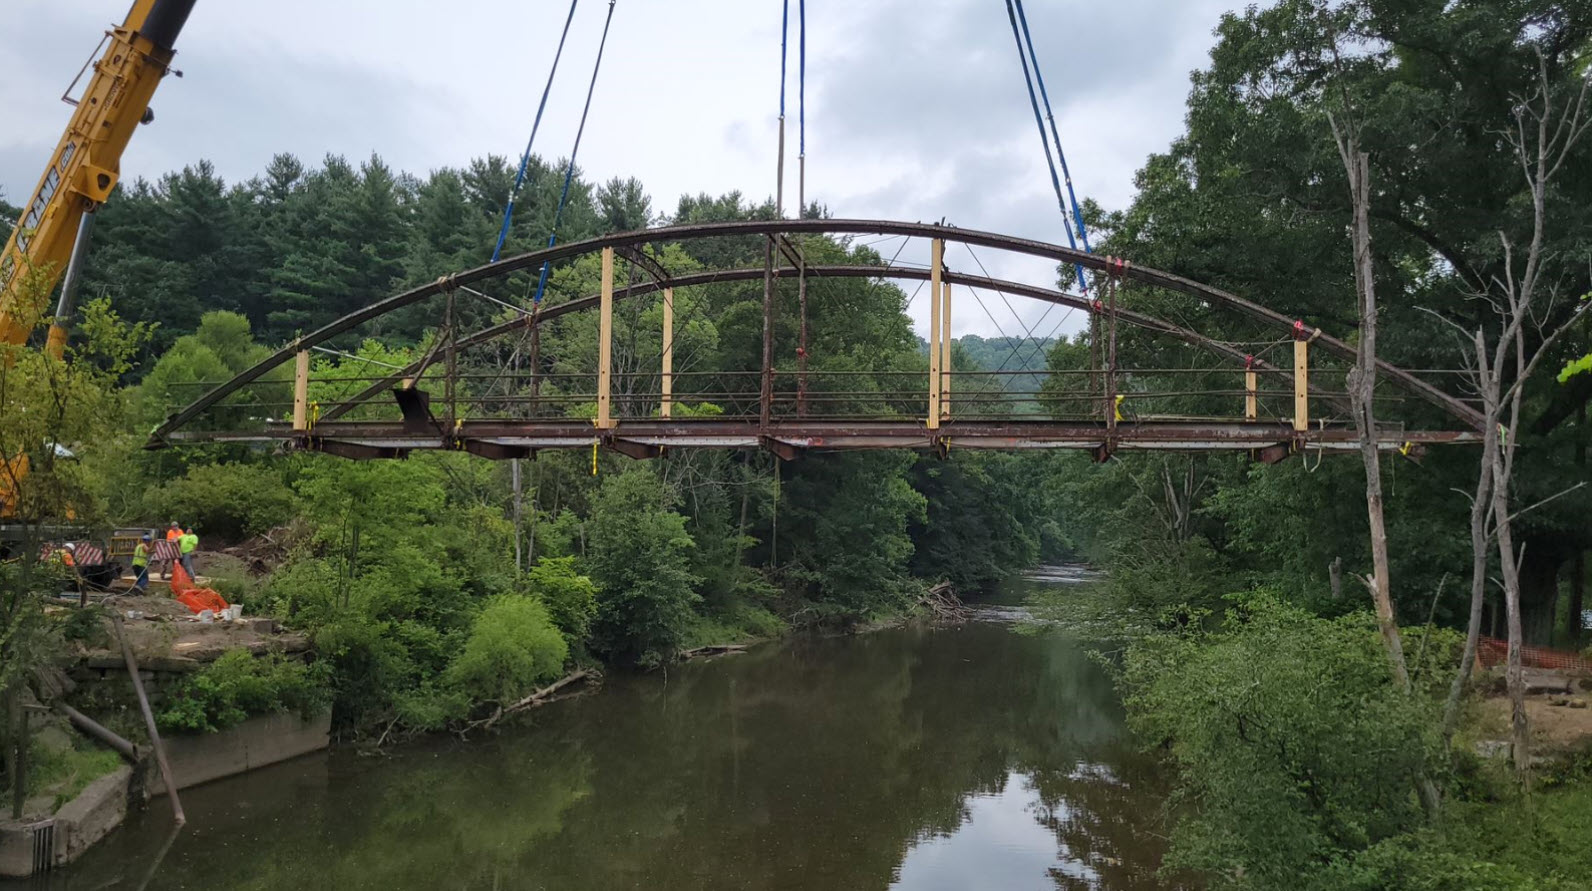 Straps lift up metal bridge over water.